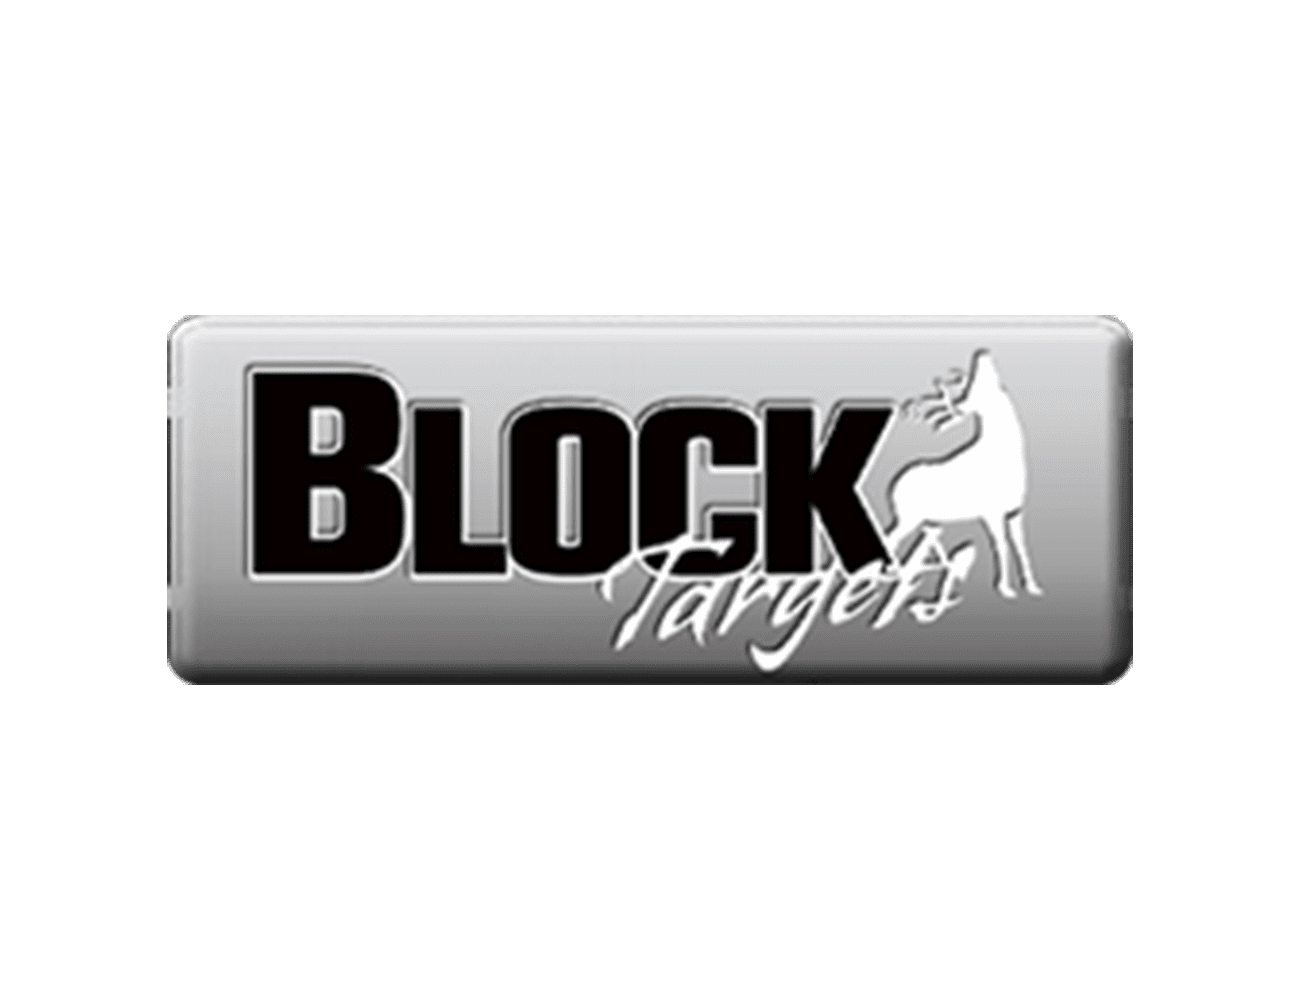 BLOCK Targets Logo